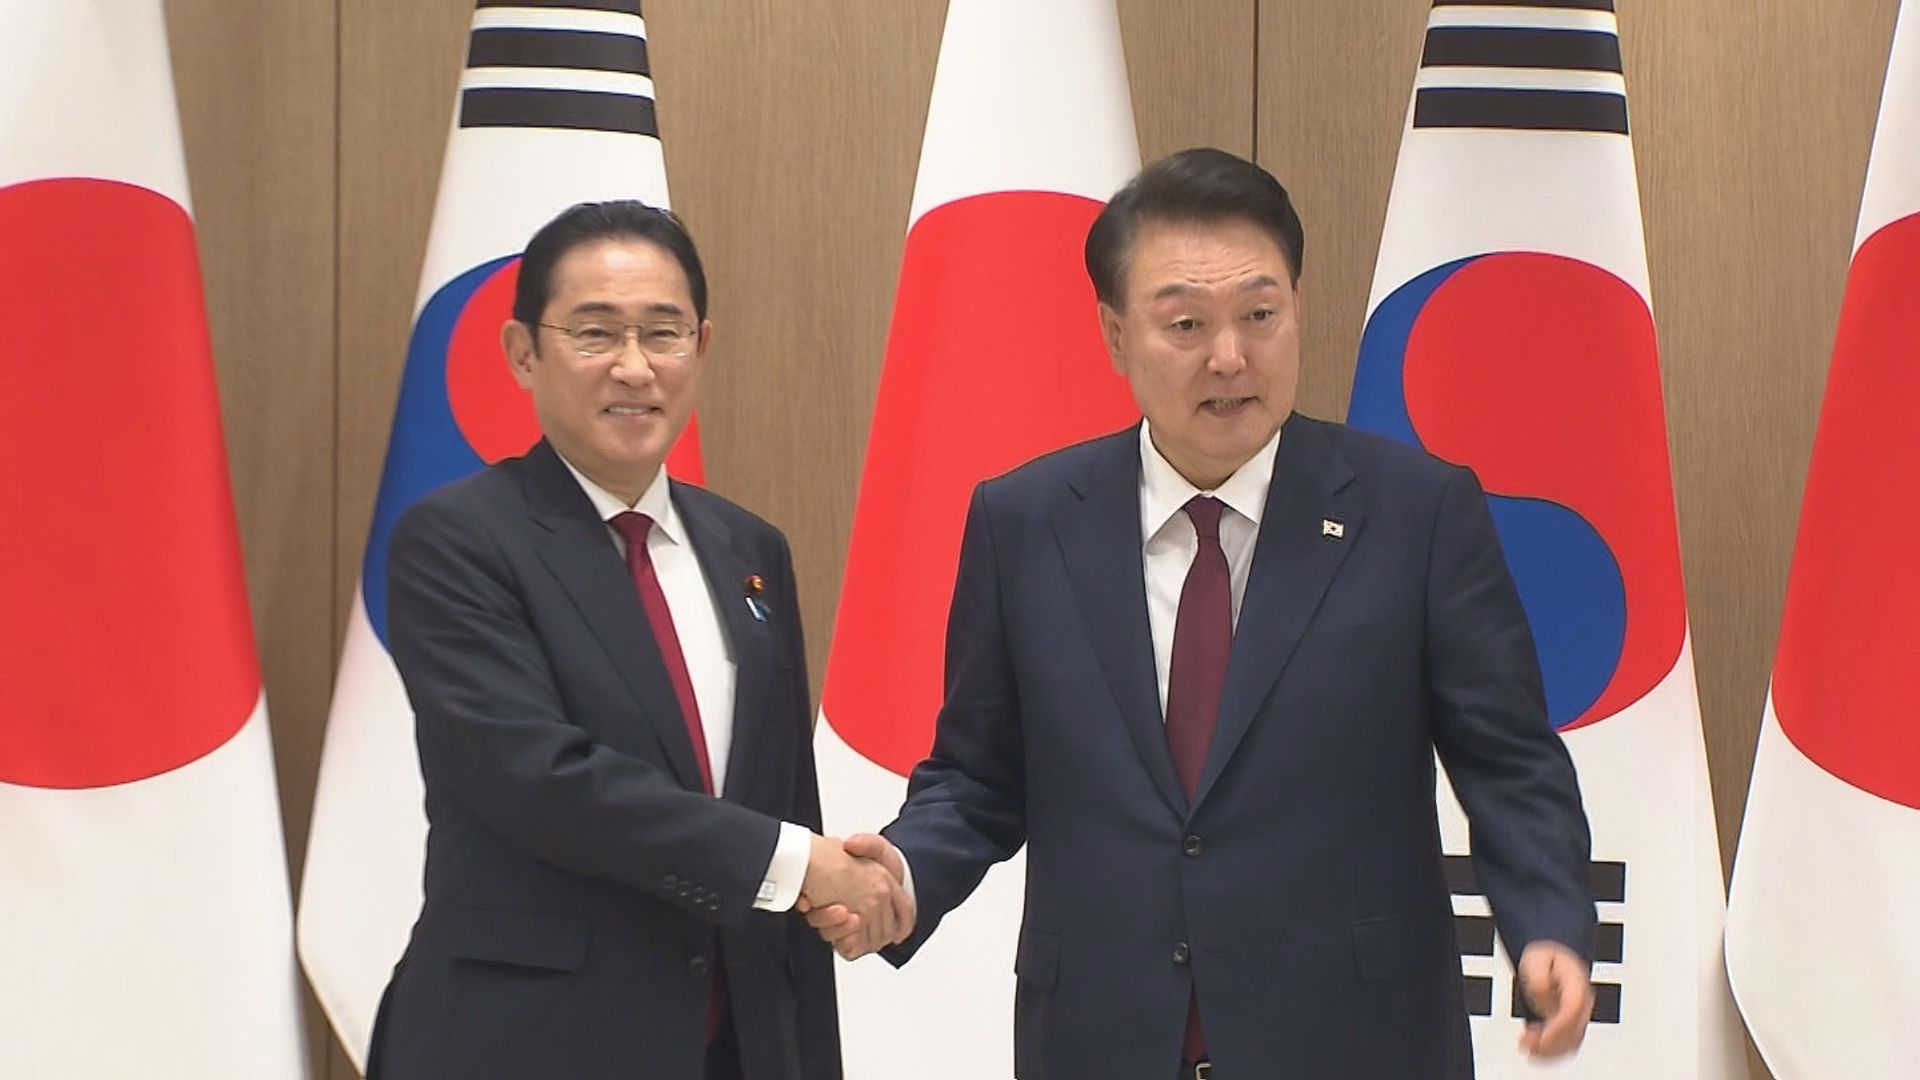 LINE問題「懸案にならないようにしたい」 尹大統領が日韓首脳会談で岸田総理に伝える